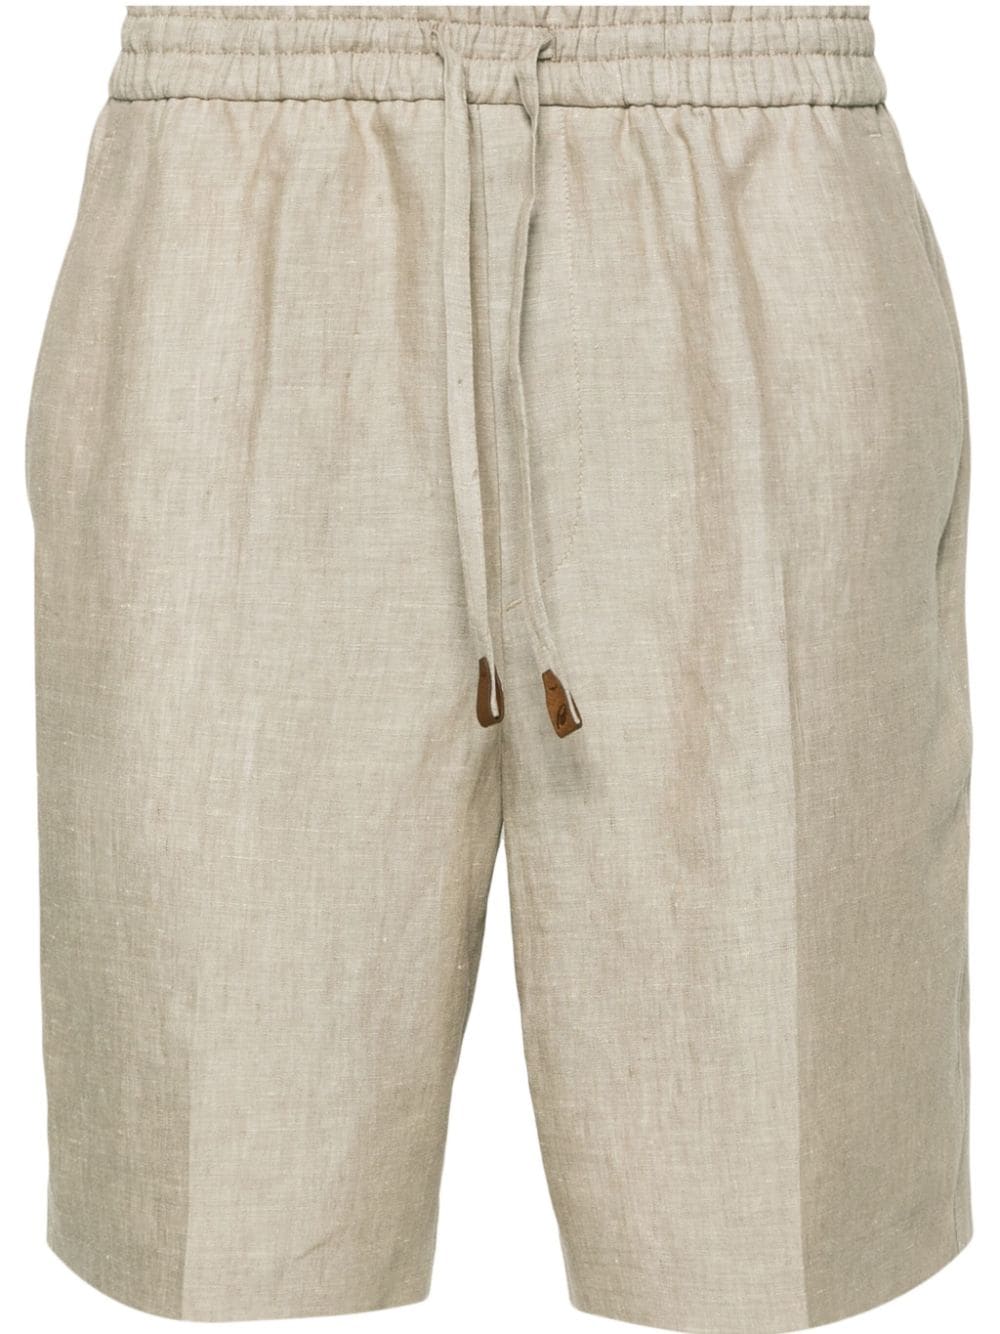 Brioni mid-rise linen bermuda shorts - Neutrals